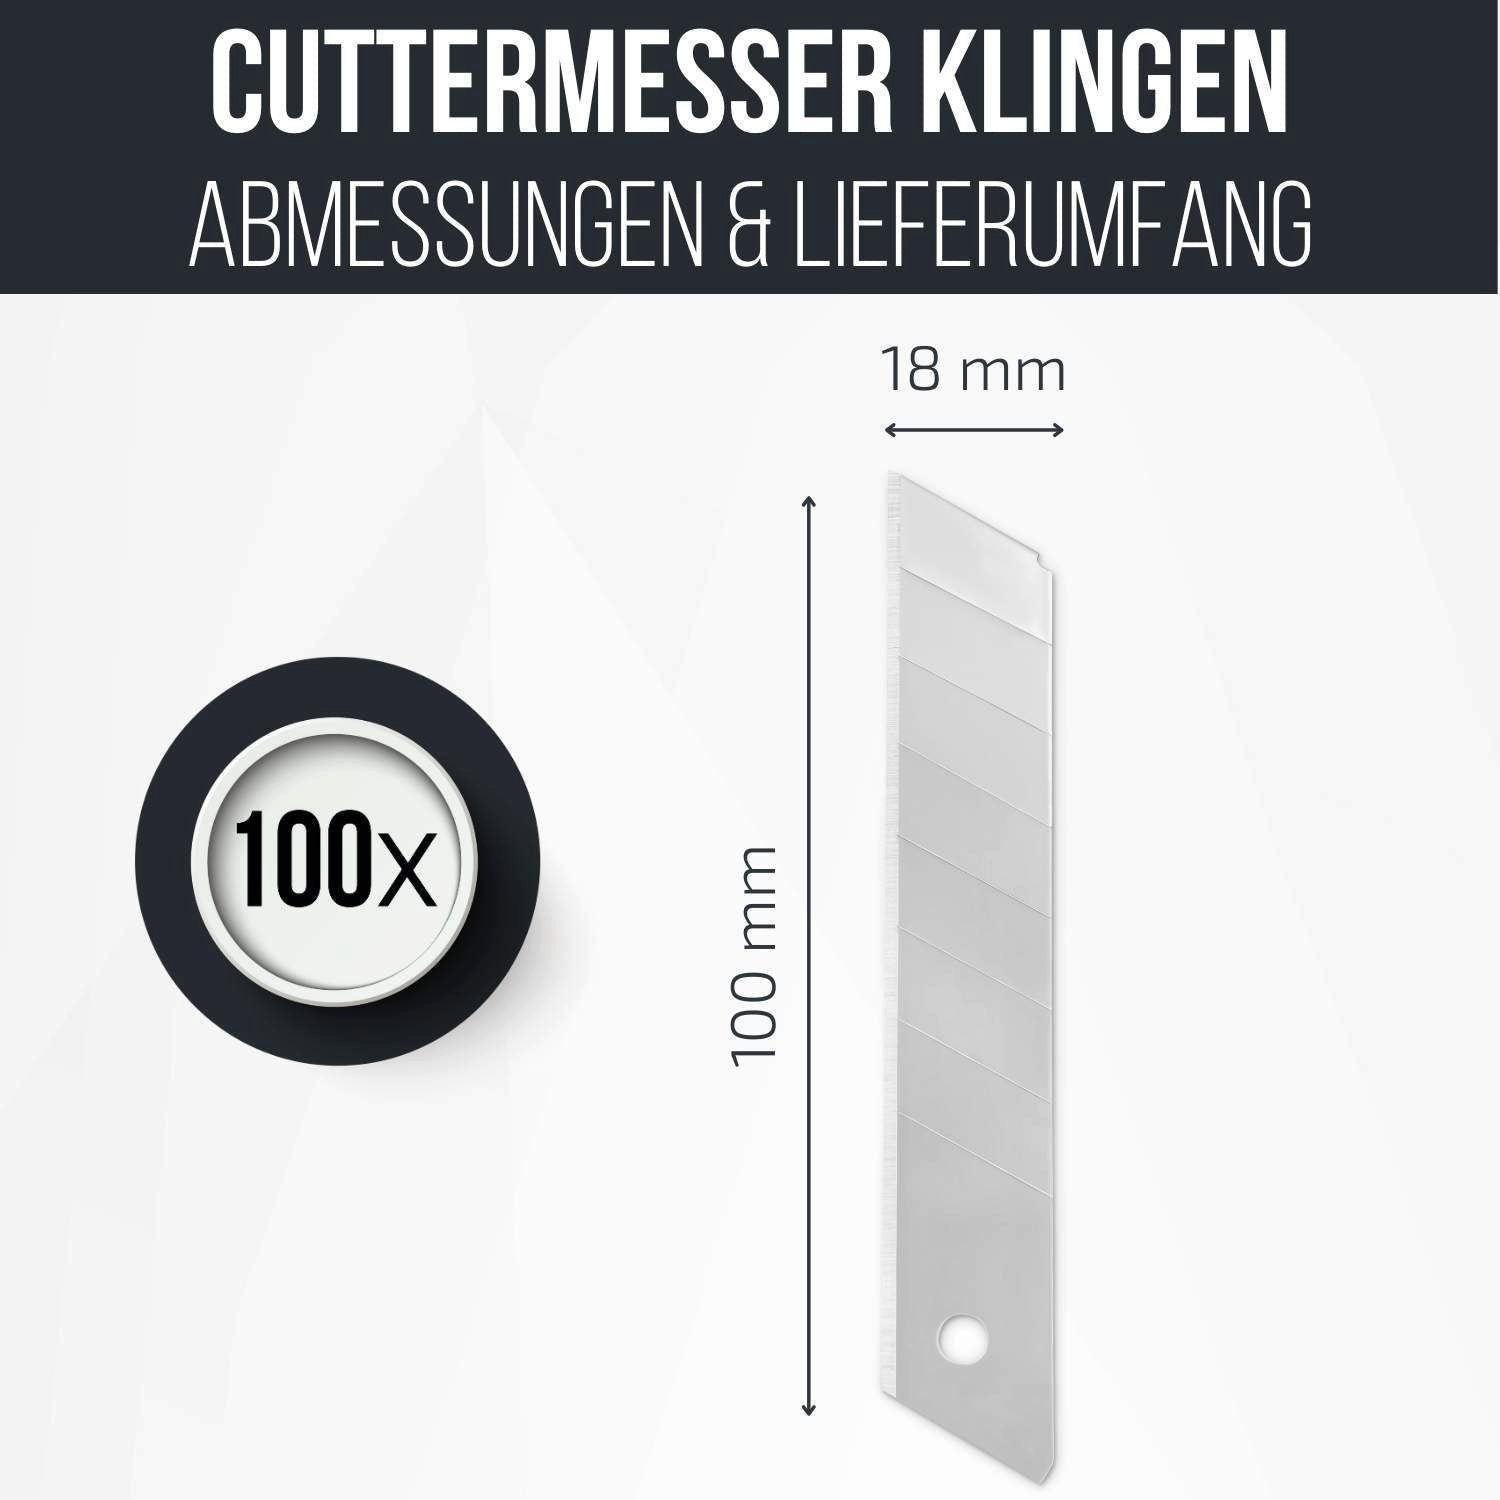 18mm Filzada 100x Abbrechklingen Cutterklingen Klingen Silber Cuttermesser Cuttermesser